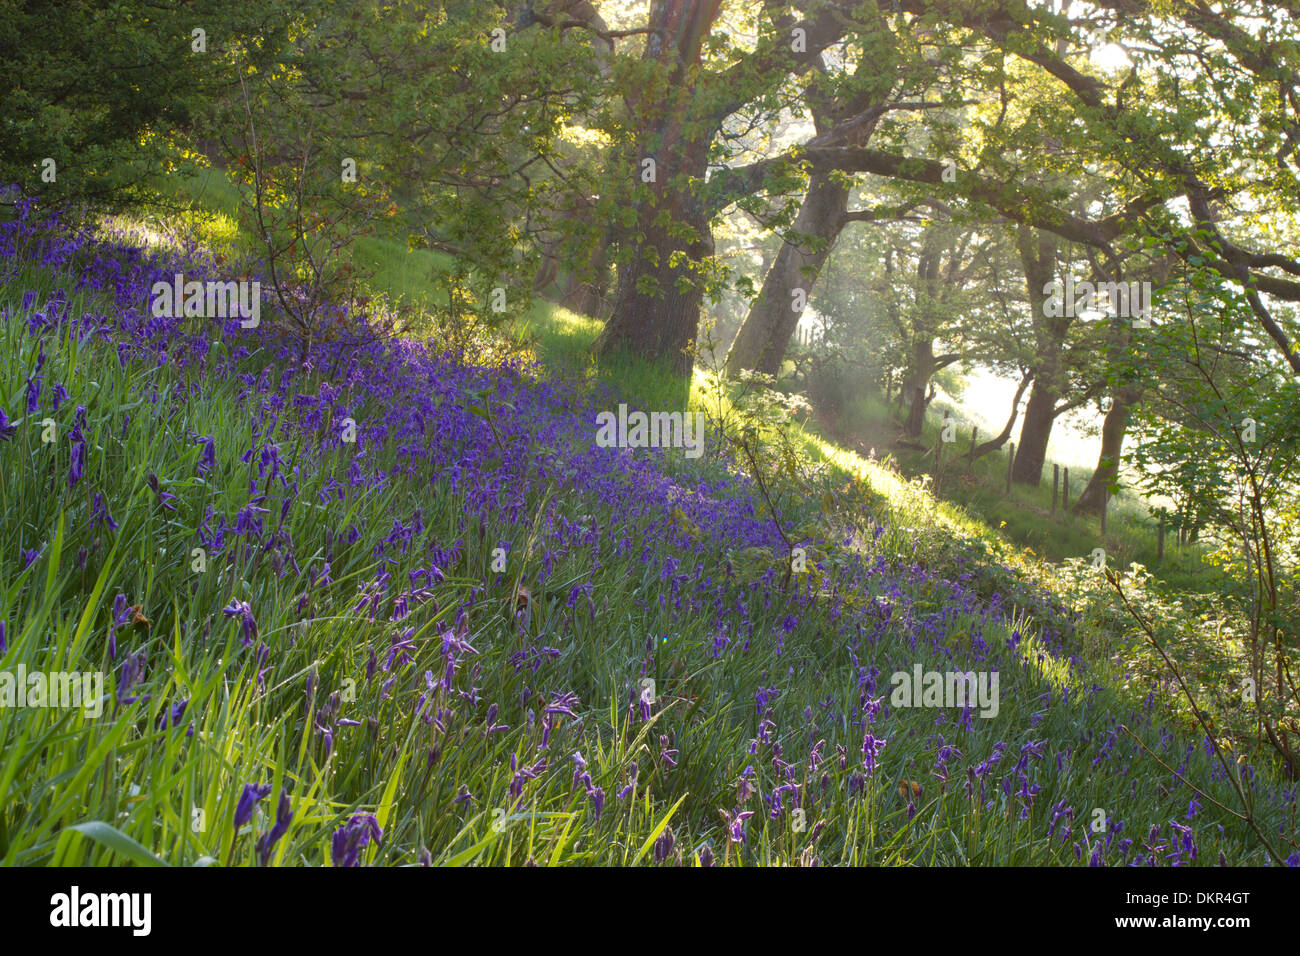 La brume et la lumière du soleil dans une forêt de chênes avec Bluebells (Hyacinthoides non-scripta) floraison. Powys, Pays de Galles. De juin. Banque D'Images